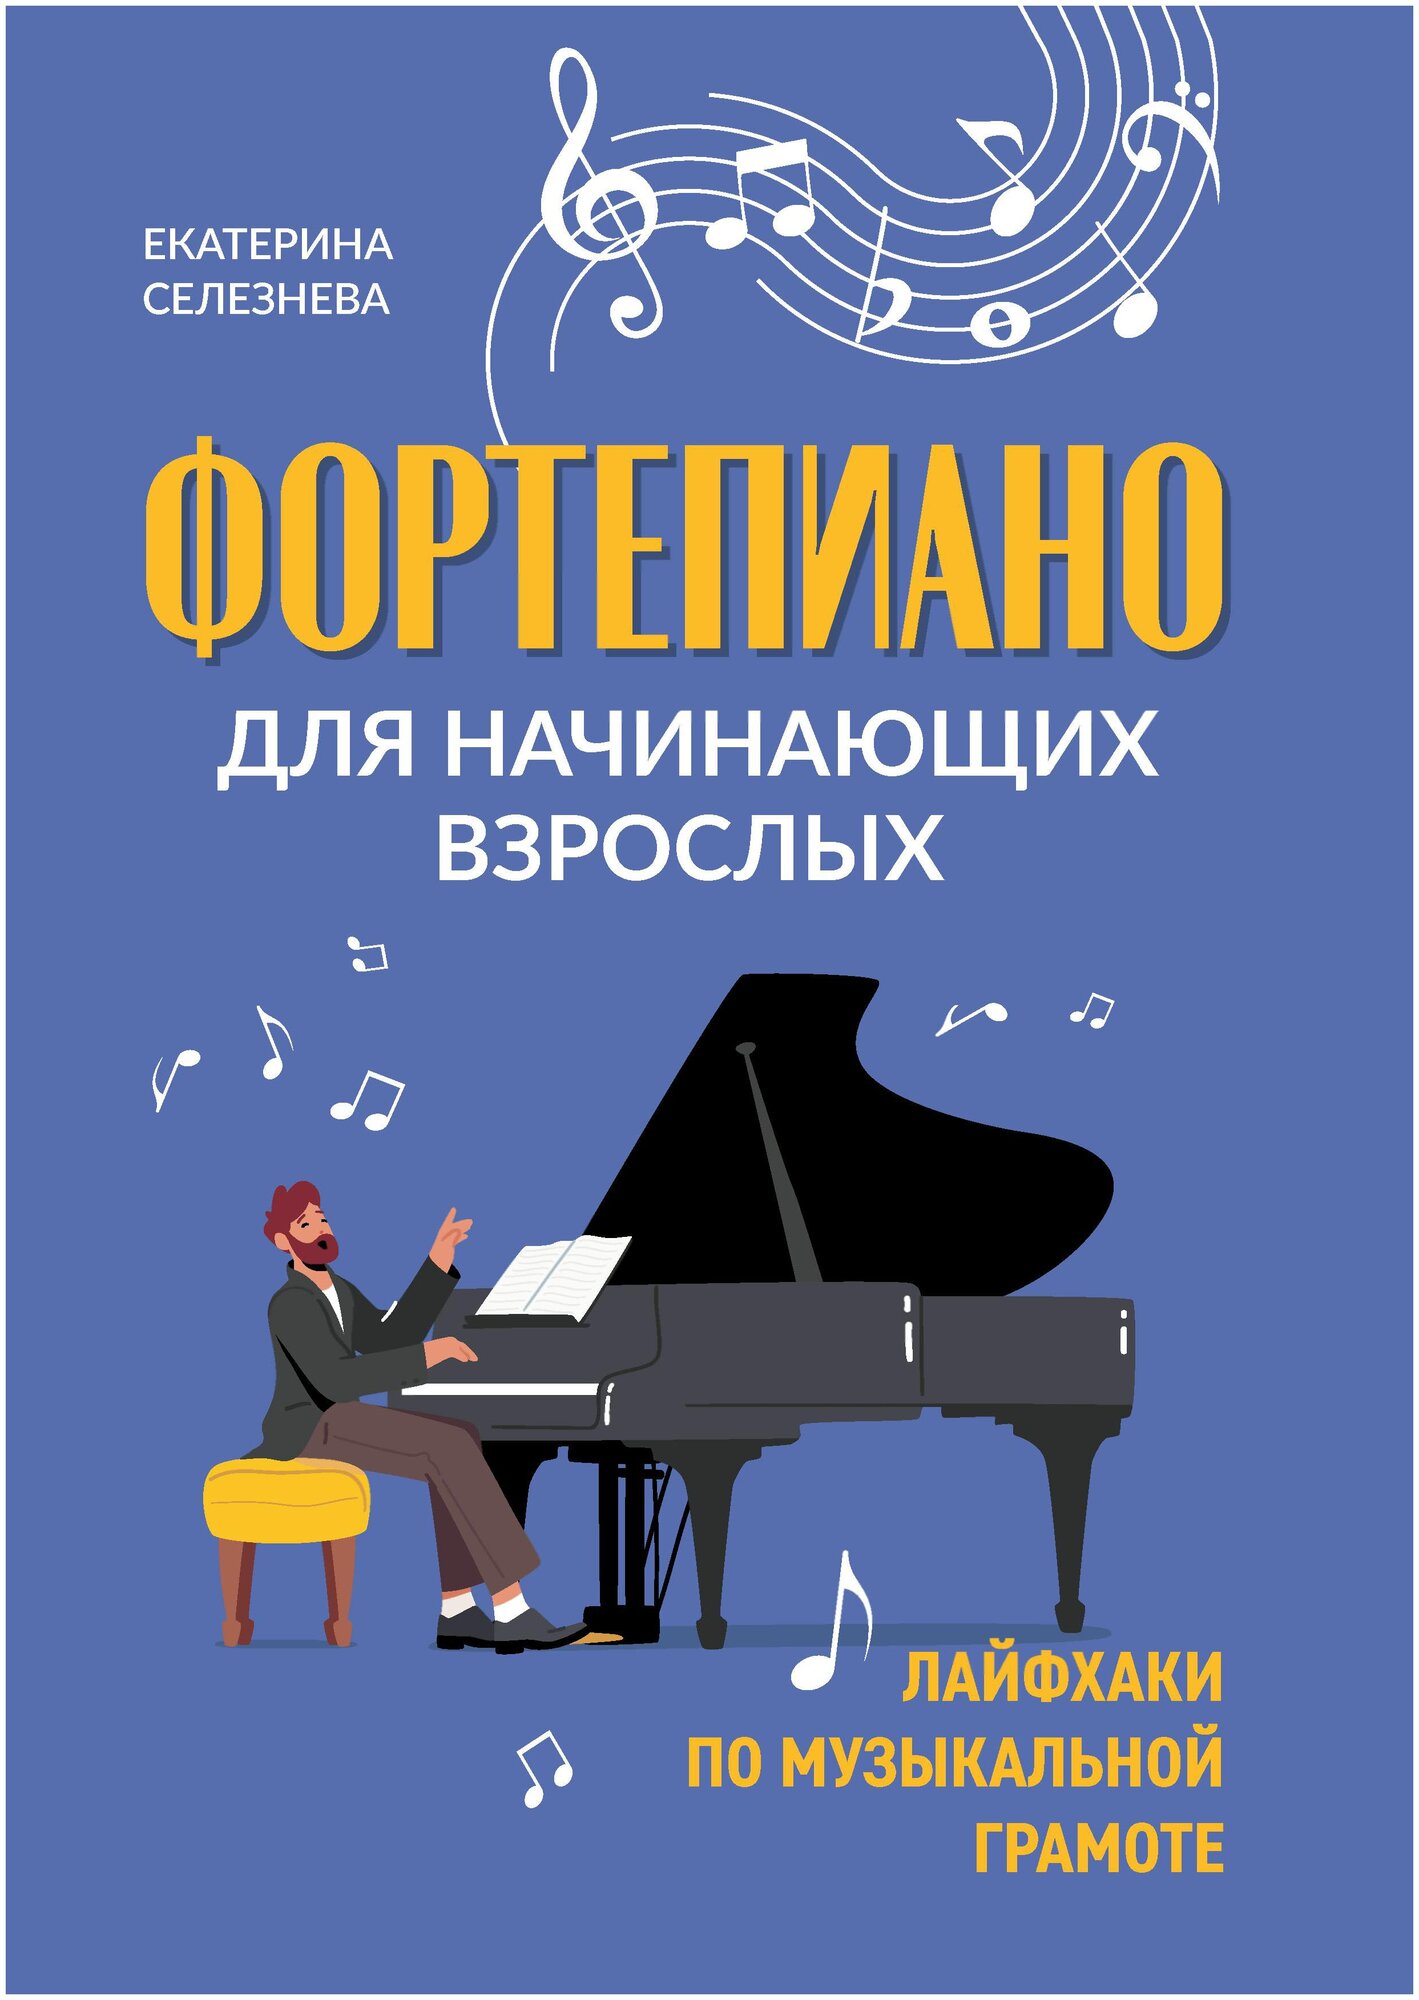 Фортепиано для начинающих взрослых Лайфхаки по музыкальной грамоте Пособие Селезнева Е 0+